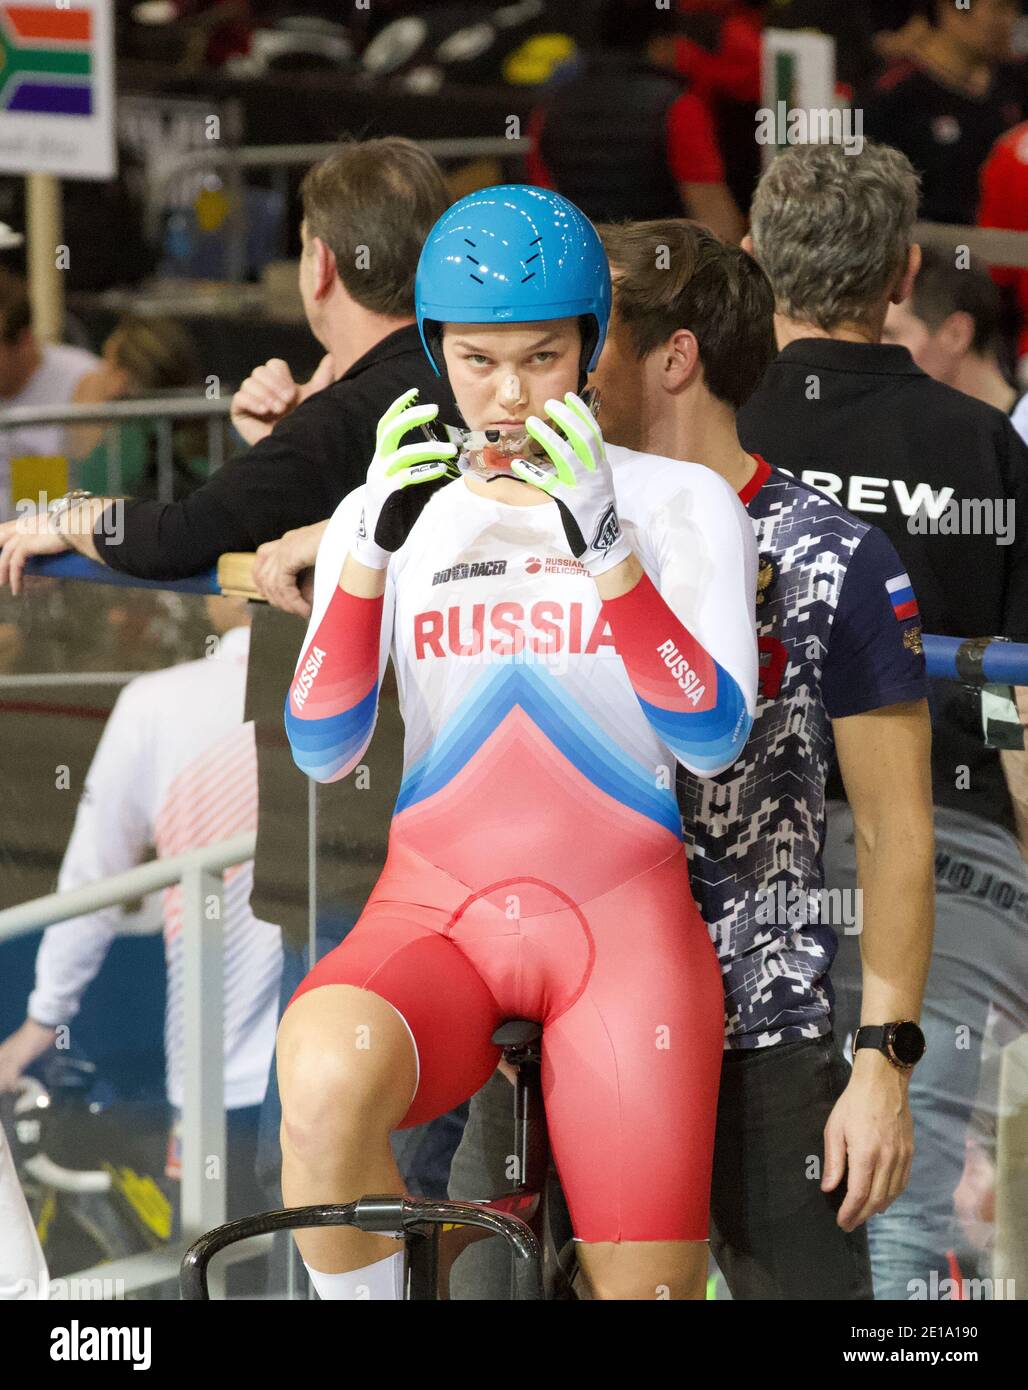 Anastasia Voinova aus Russland während der UCI-Bahn-Weltmeisterschaften  2018 in Apeldoorn (Niederlande Stockfotografie - Alamy